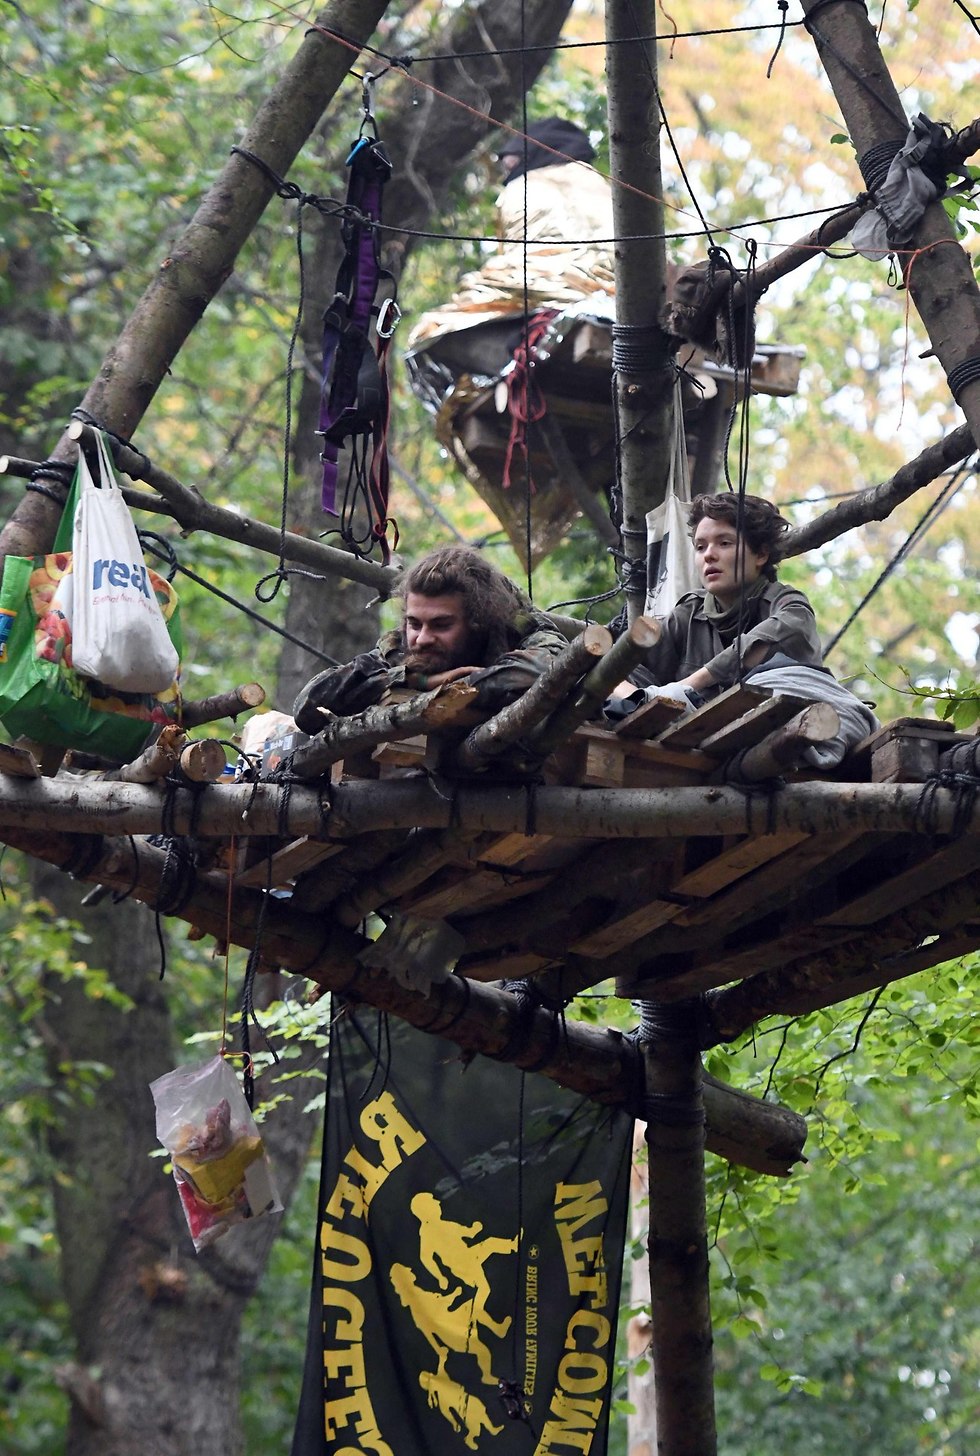 משטרת גרמניה מפנה פעילים סביבתיים שגרים על עצים יער ב קרפן  (צילום: AFP)